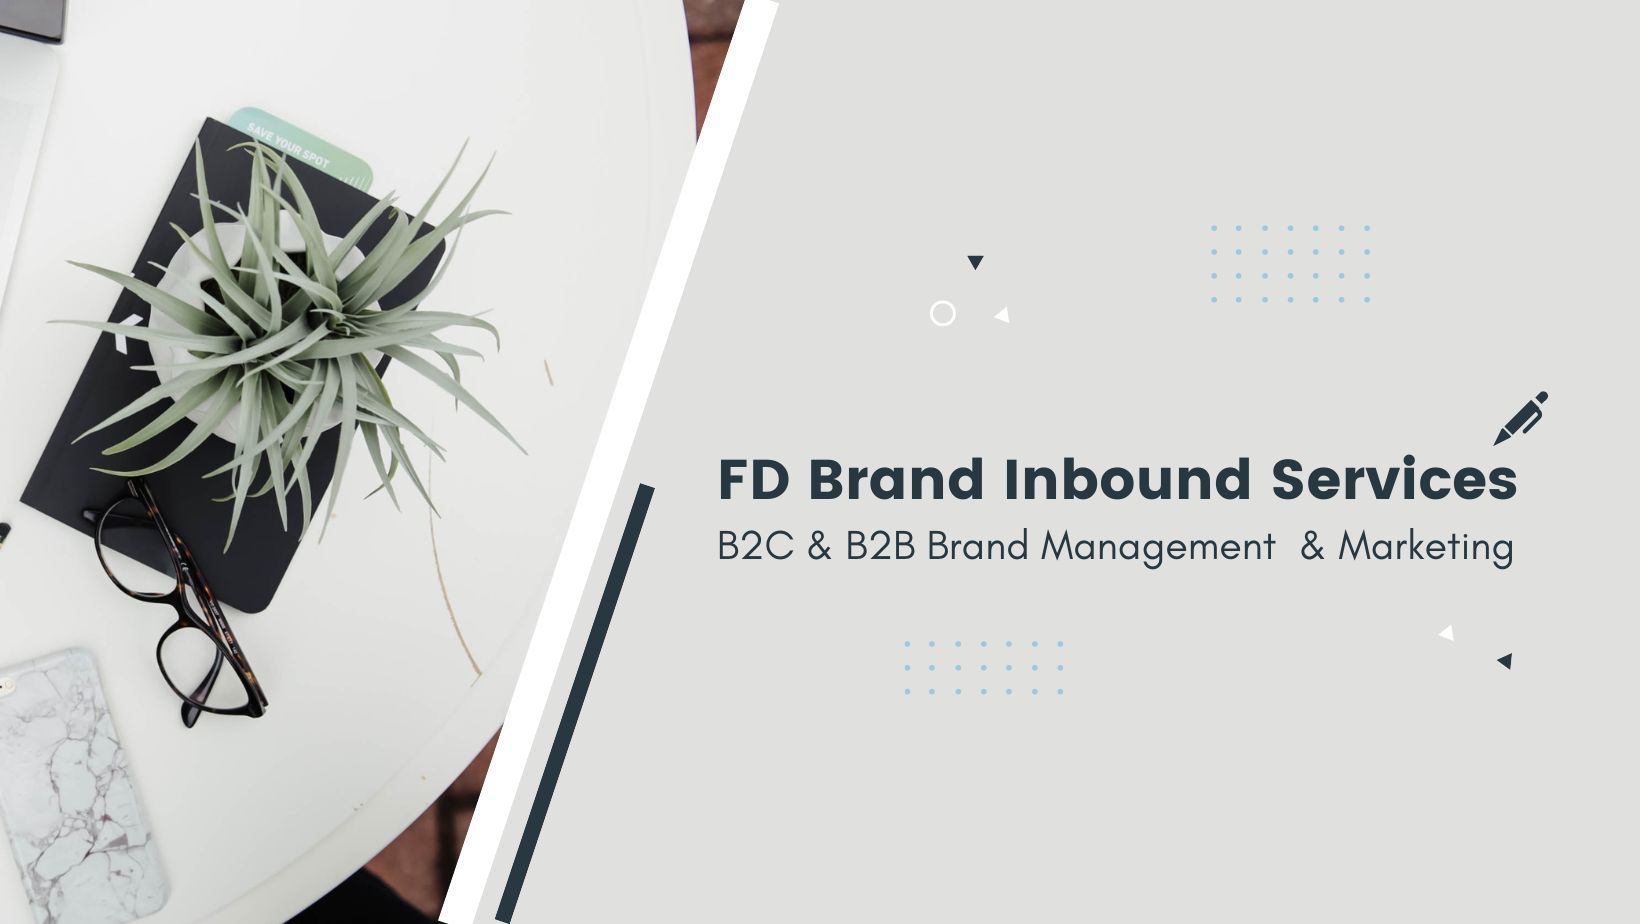 FD 品牌整合服務項目  》FD  Brand Inbound Services List